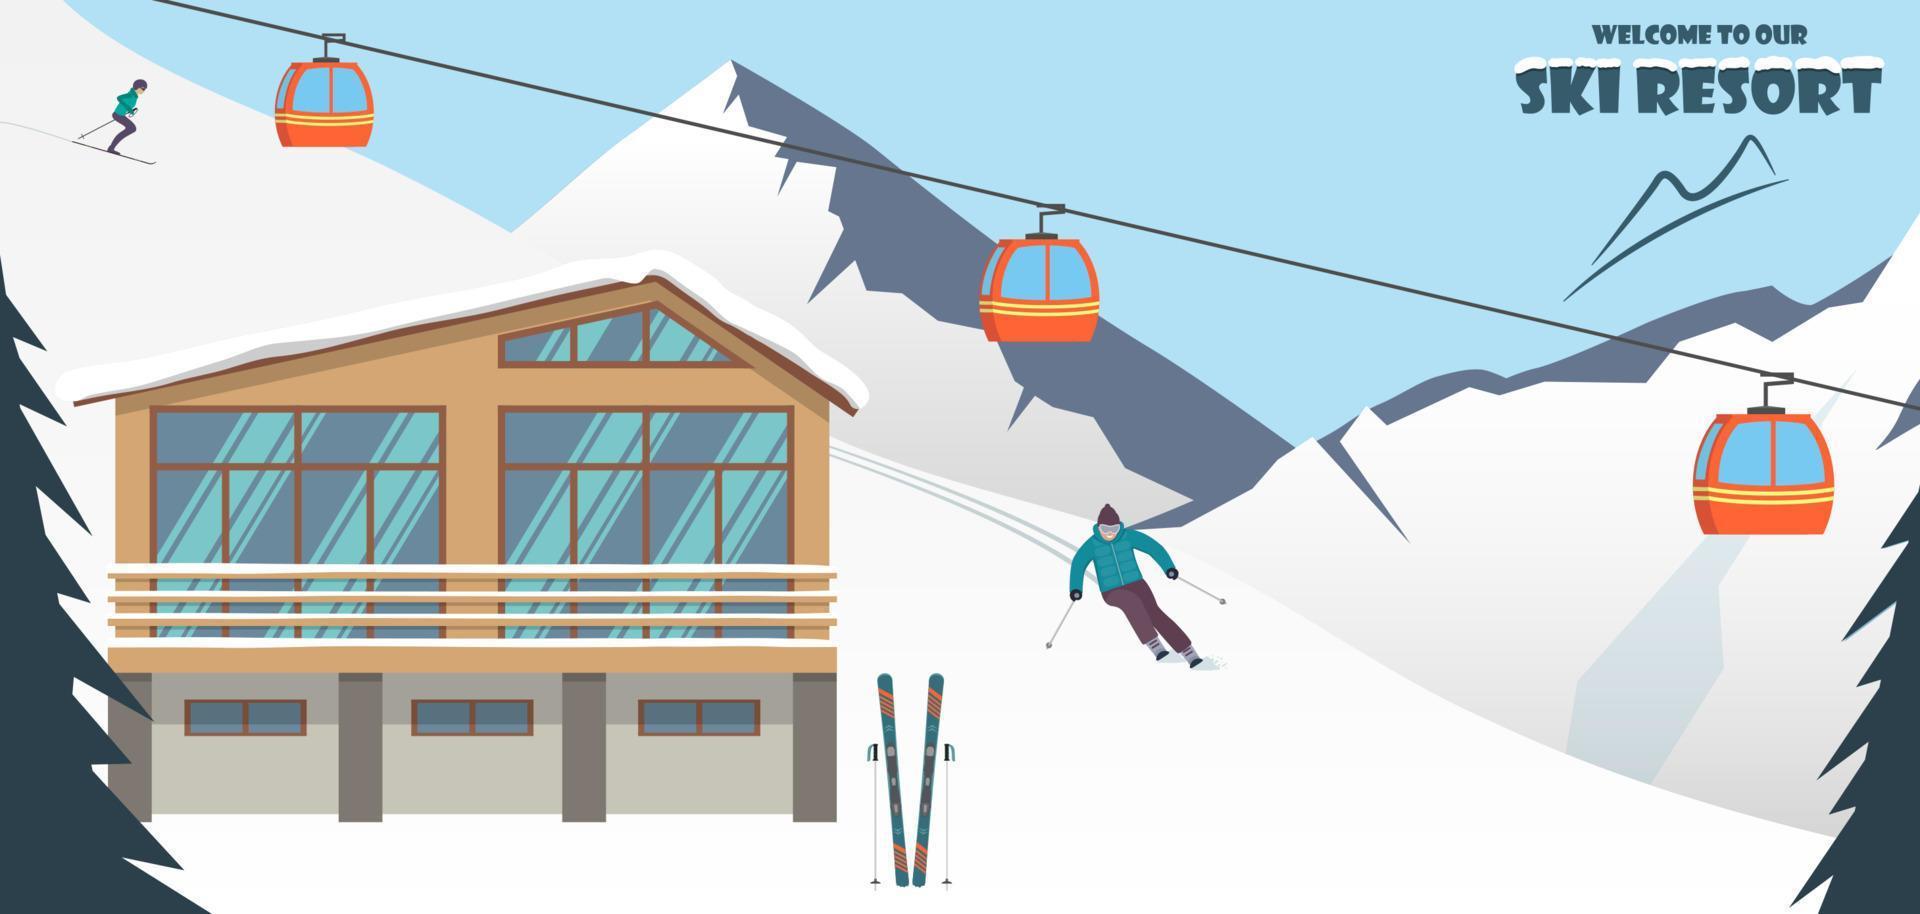 estación de esquí. paisaje montañoso invernal con cabaña, remonte, esquiador, carreras por la pendiente. banner de vacaciones de deportes de invierno. ilustración vectorial vector